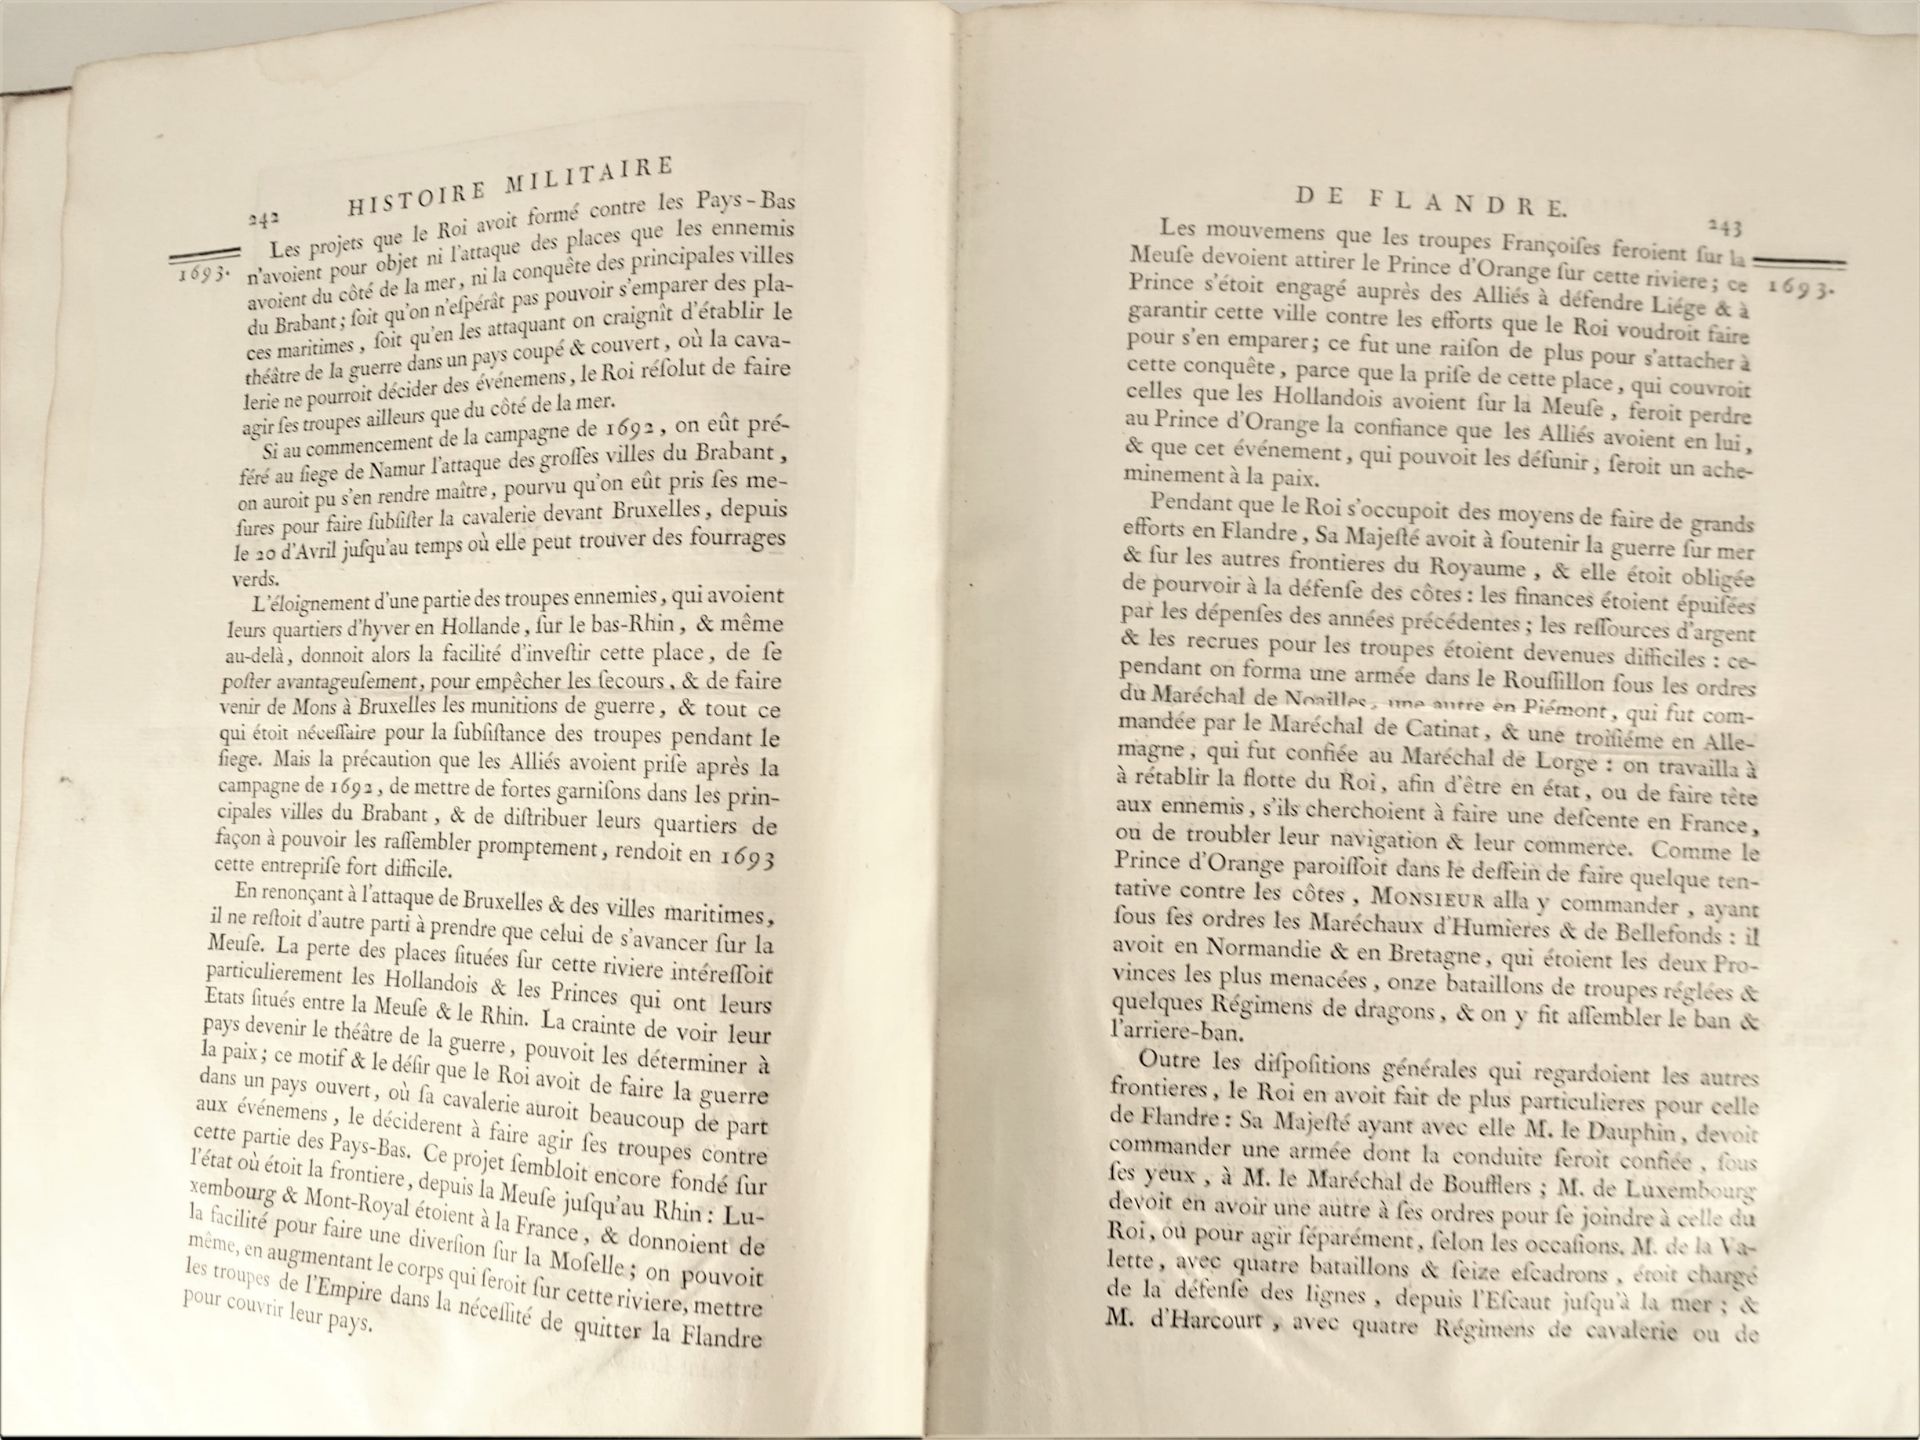 |Histoire Militaire| Chevalier de Beaurain, "Histoire Militaire de Flandre depuis l'année 1690 - Image 4 of 19